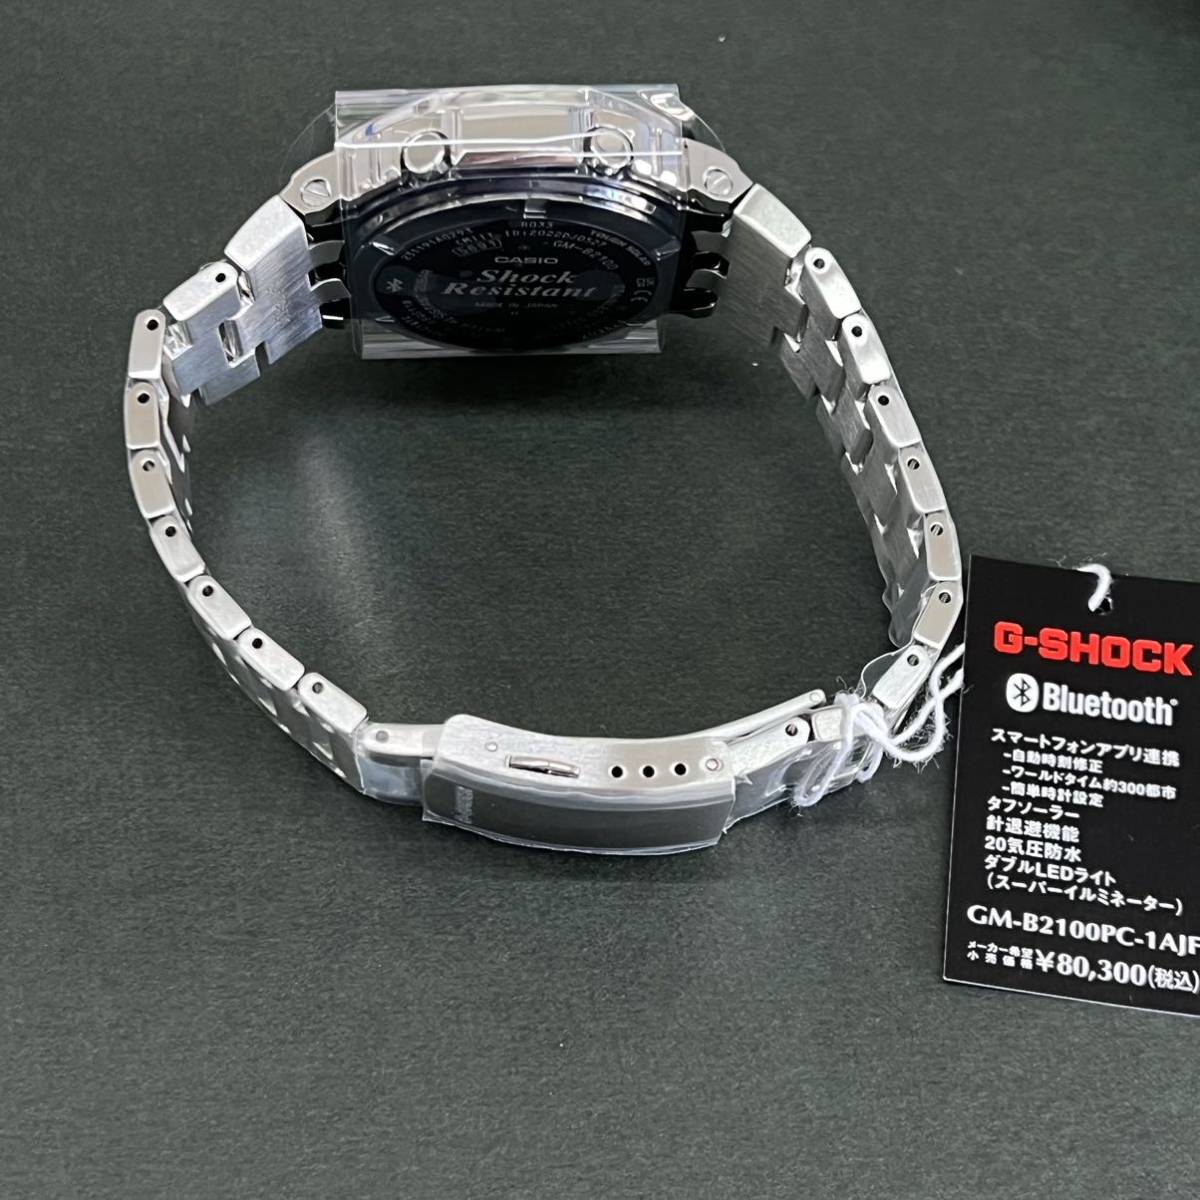 送料無料★特価 新品 カシオ正規保証付き★G-SHOCK GM-B2100PC-1AJF フルメタル カシオーク シルバー メンズ腕時計